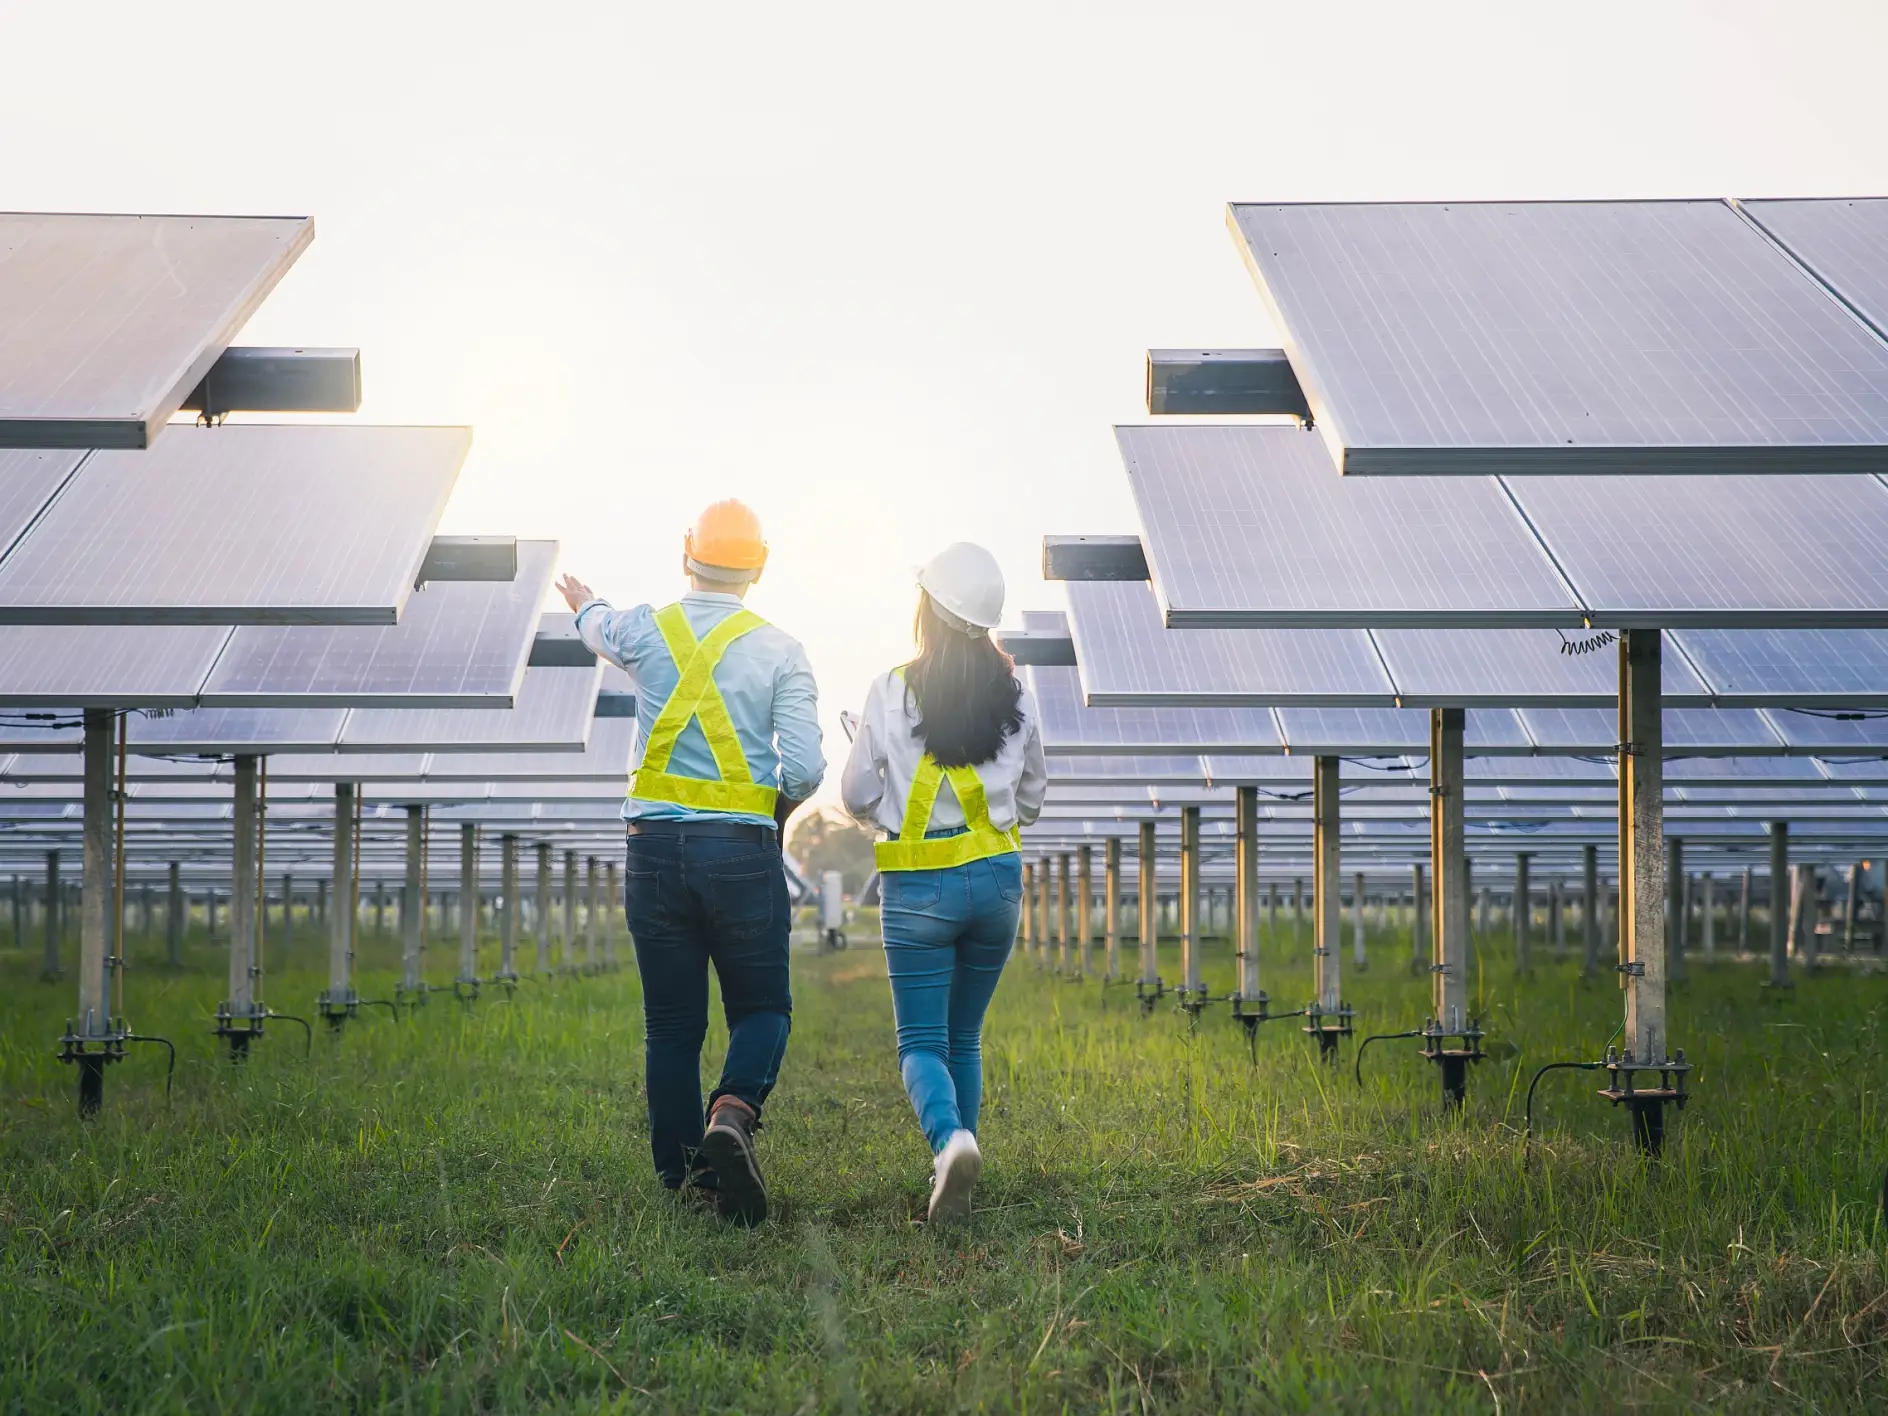 Hombre y mujer paneles de mantenimiento de los empleados recogen la energía solar. Ingeniero que trabaja en la comprobación y mantenimiento de equipos en la industria de la energía solar.